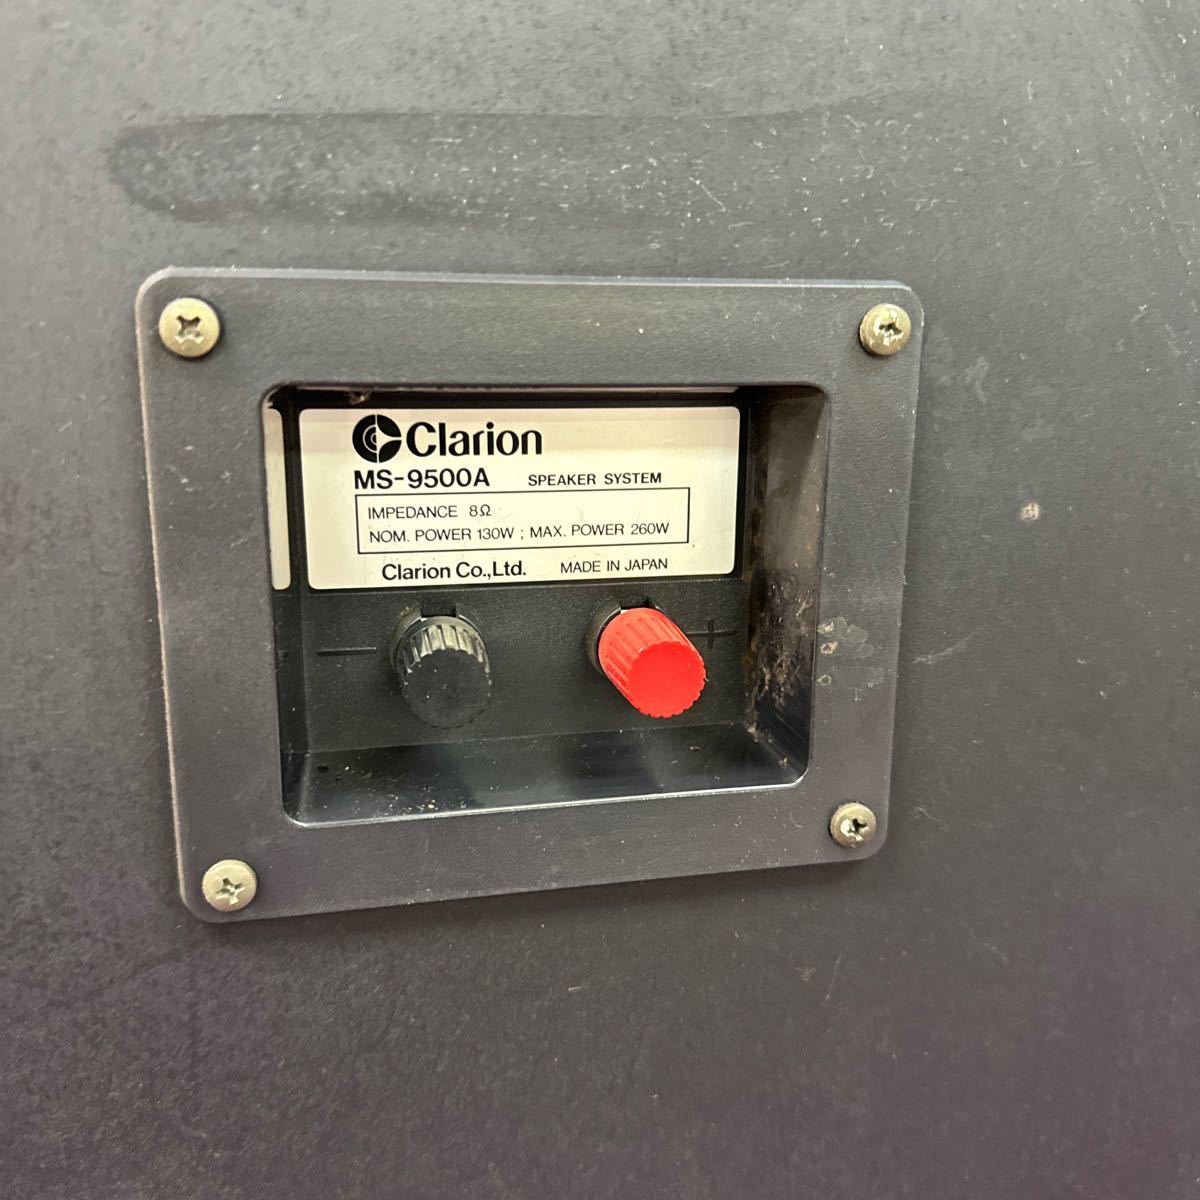 ◆中古 Clarion/クラリオン スピーカー MS-9500A 3WAY SPEAKER SYSTEM カラオケ 音響機器 132-35_画像9